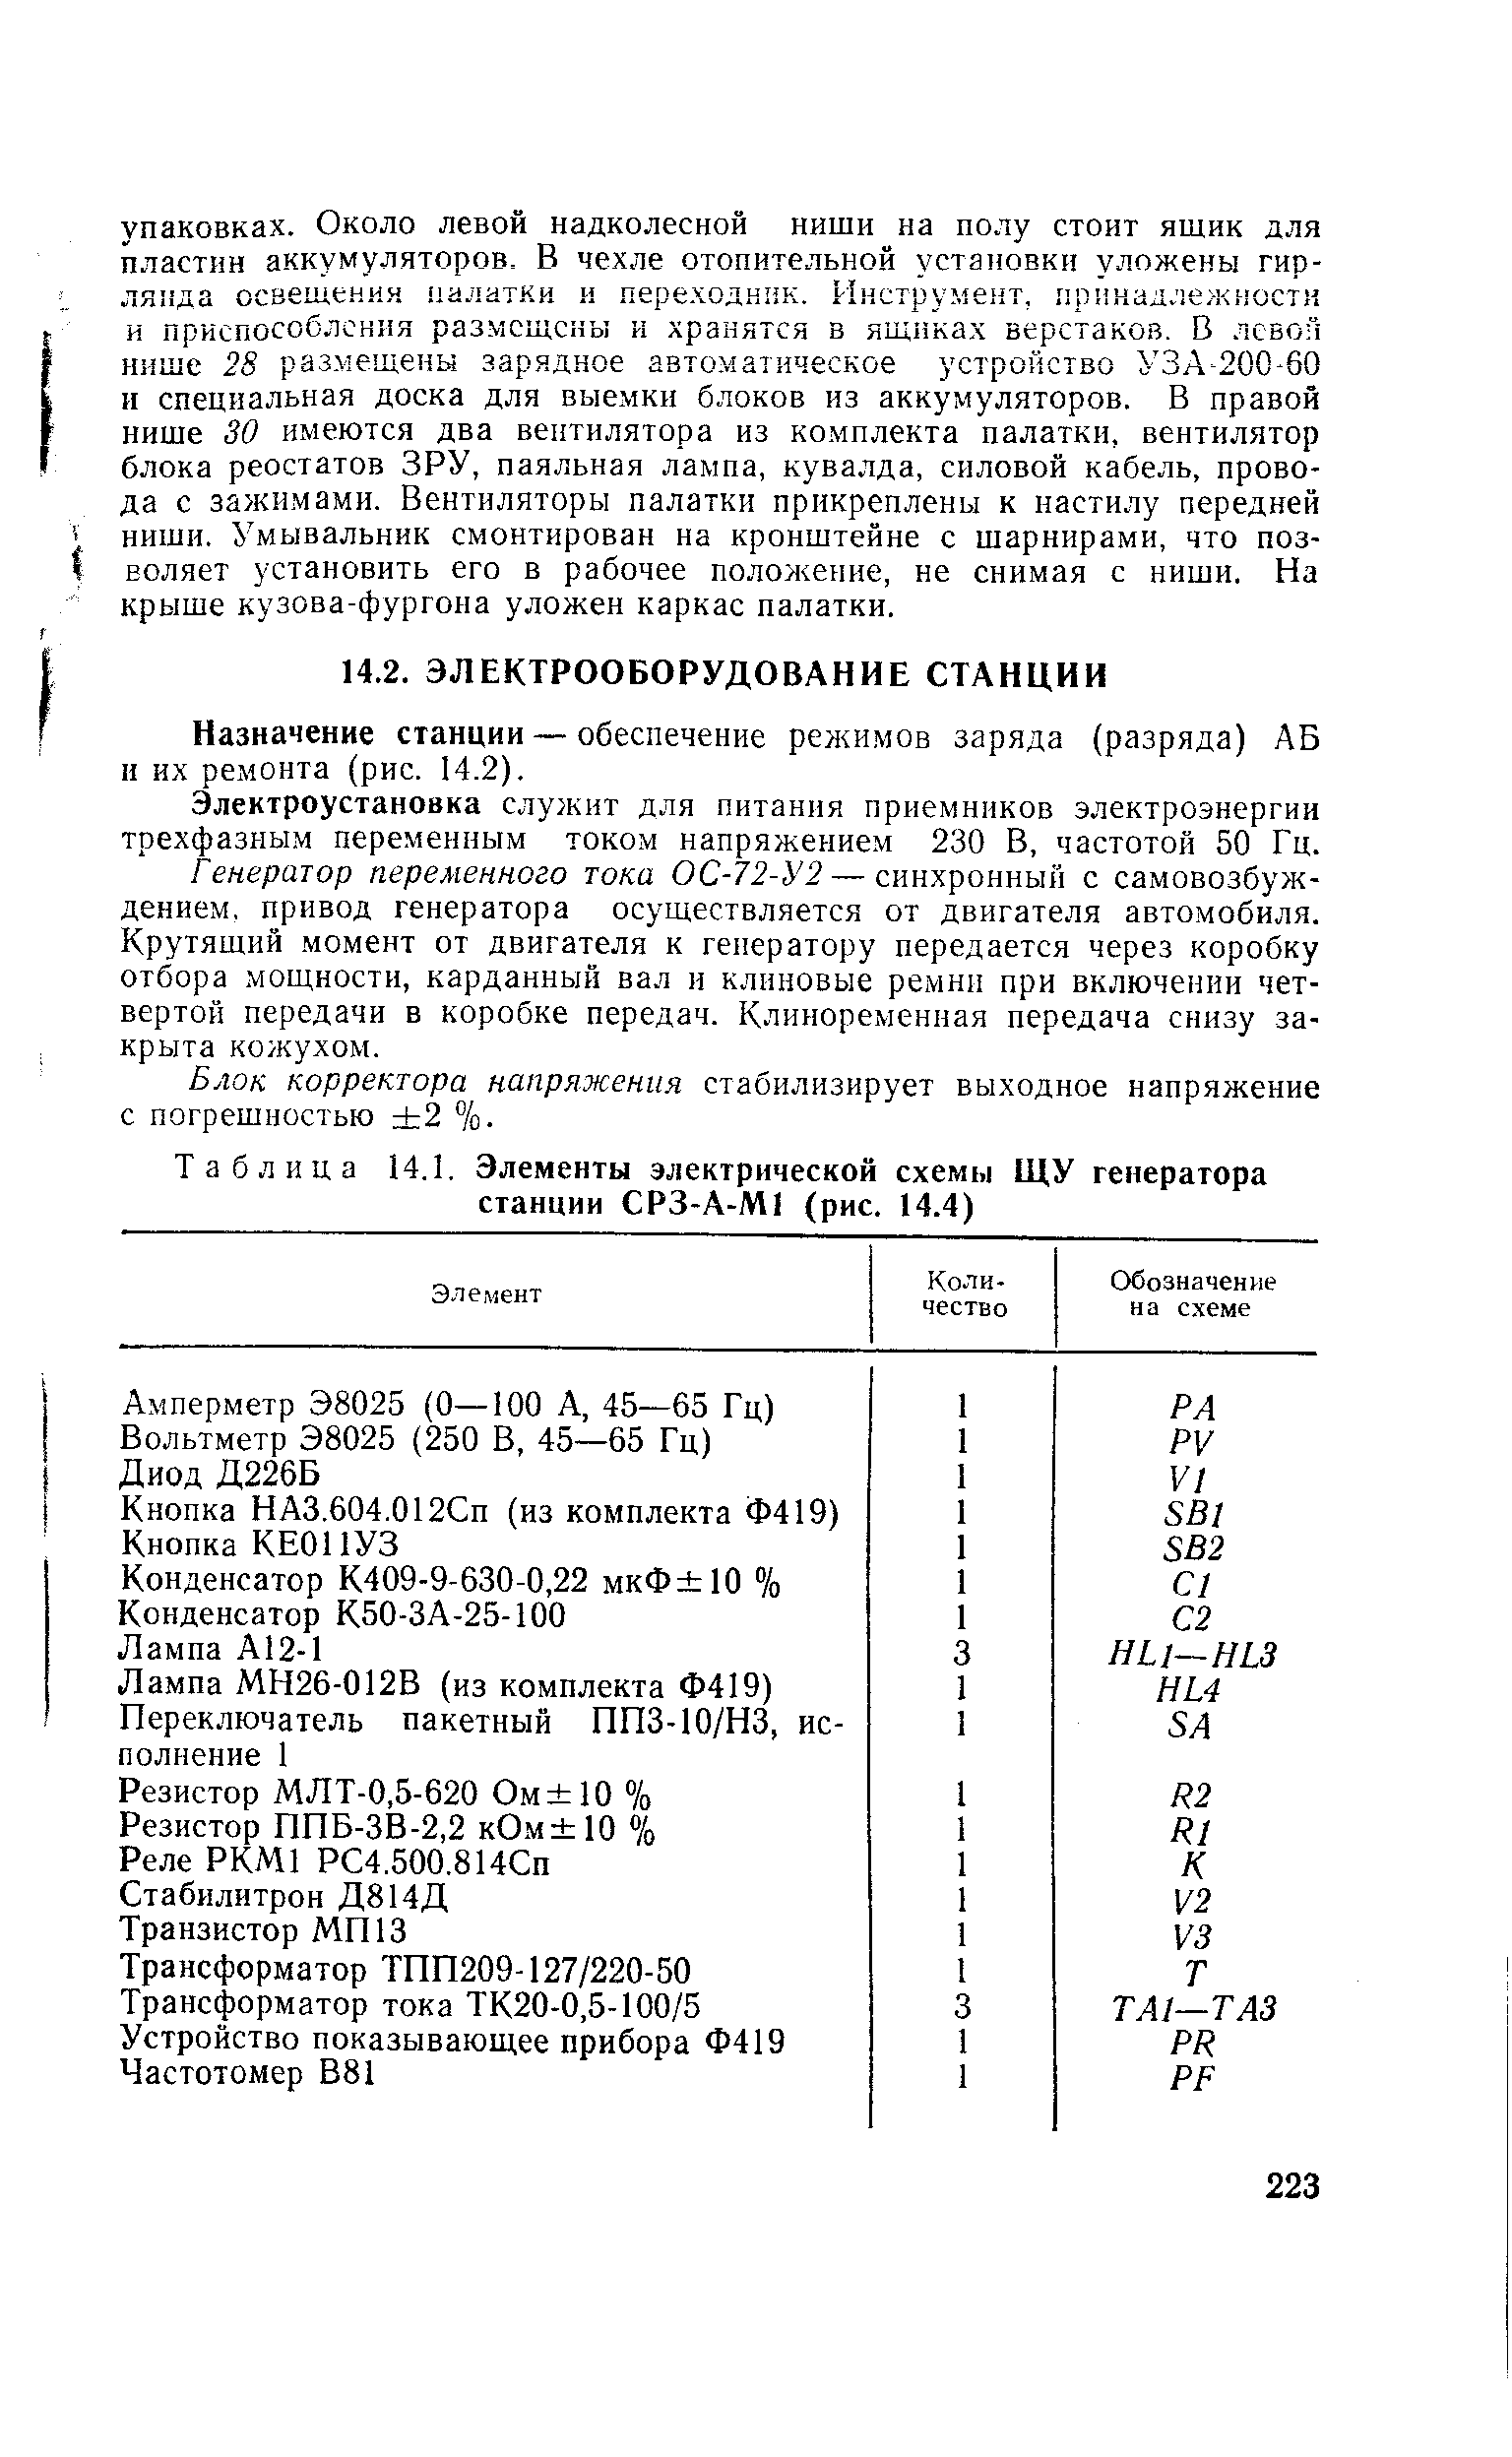 Таблица 14.1. Элементы электрической схемы ЩУ генератора станции СРЗ-А-М1 (рис. 14.4)
